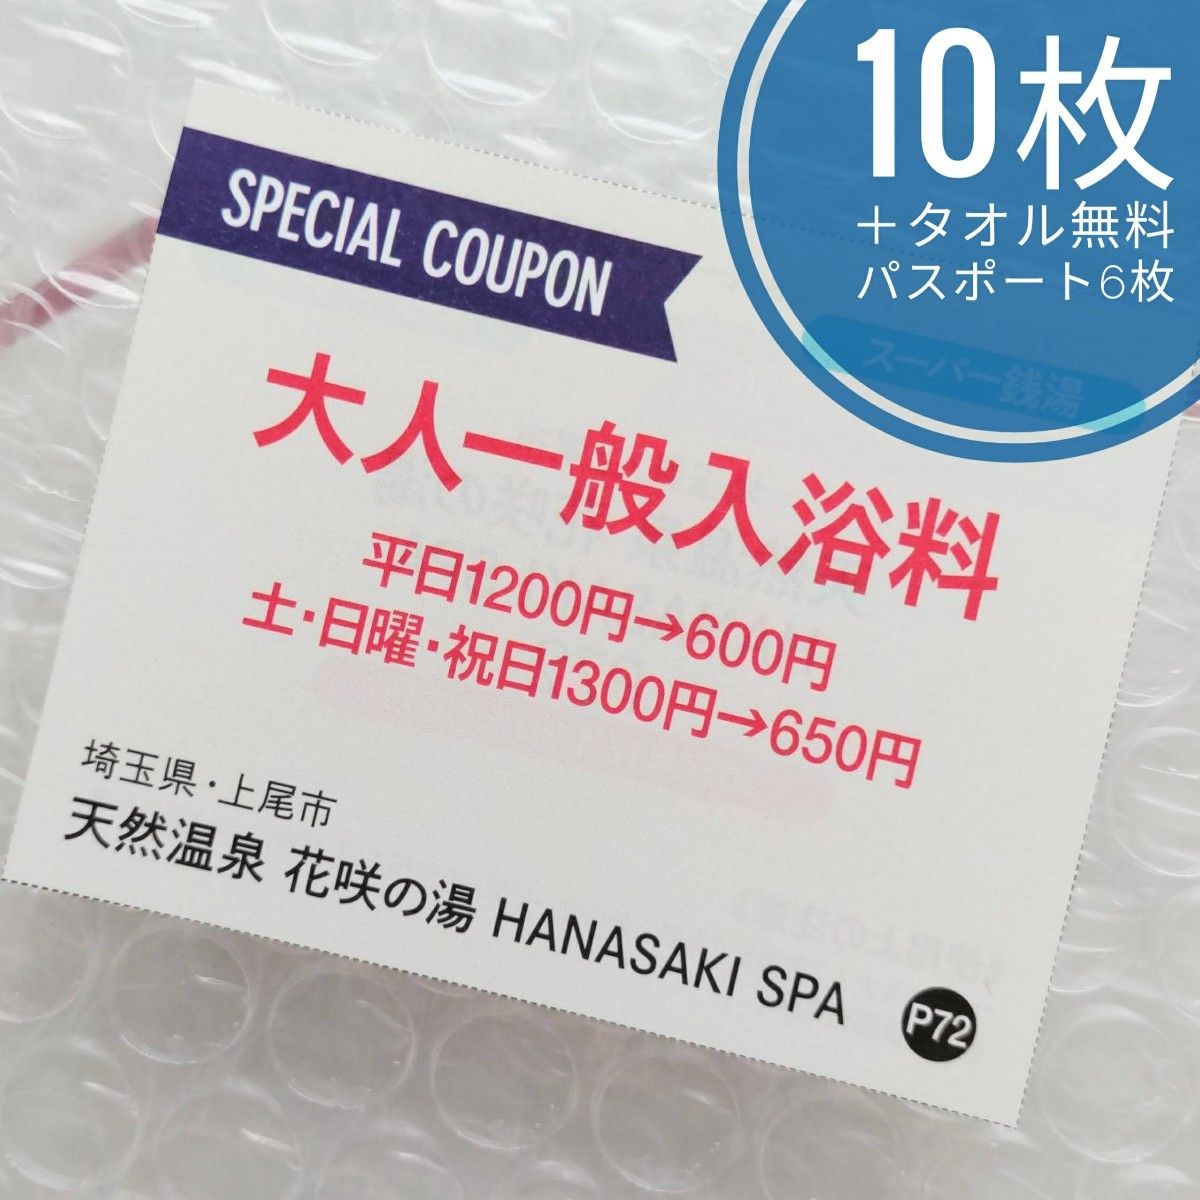 花咲の湯 HANASAKI SPA 大人一般入浴料半額 10枚＋レンタルタオルセット無料パスポート 6枚